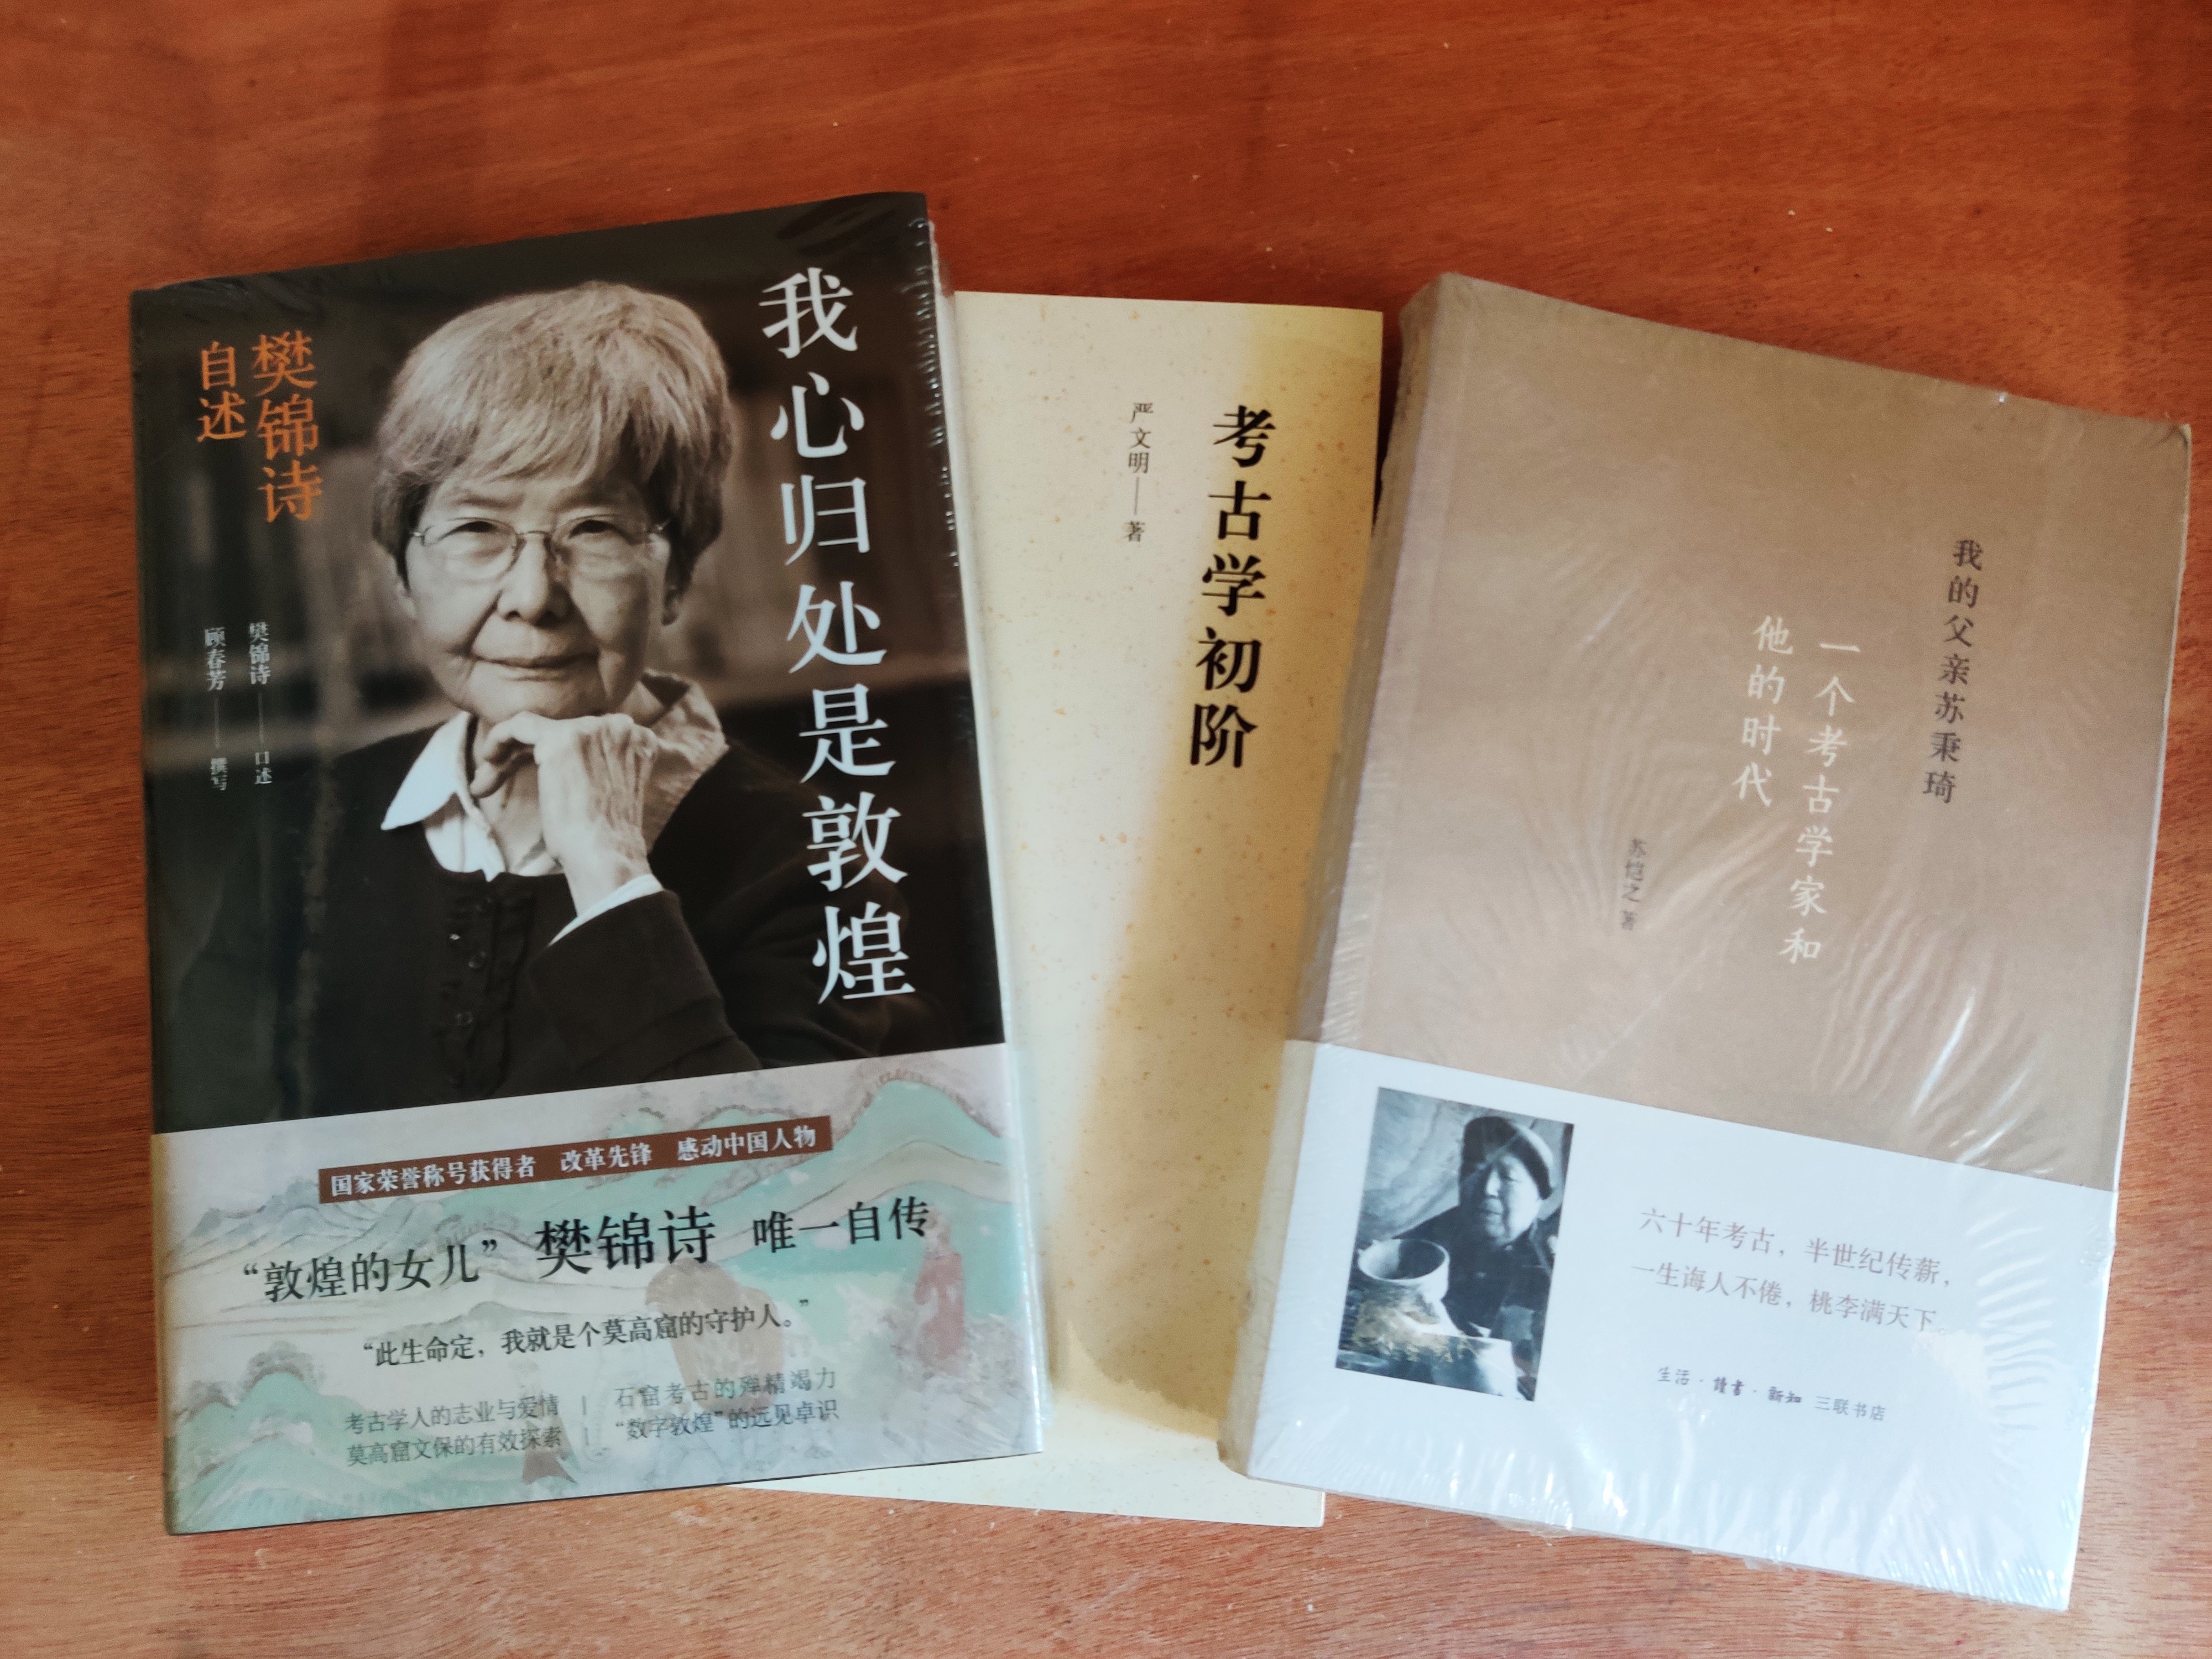 钟芳蓉报到当天新收到的三本与考古相关的书。